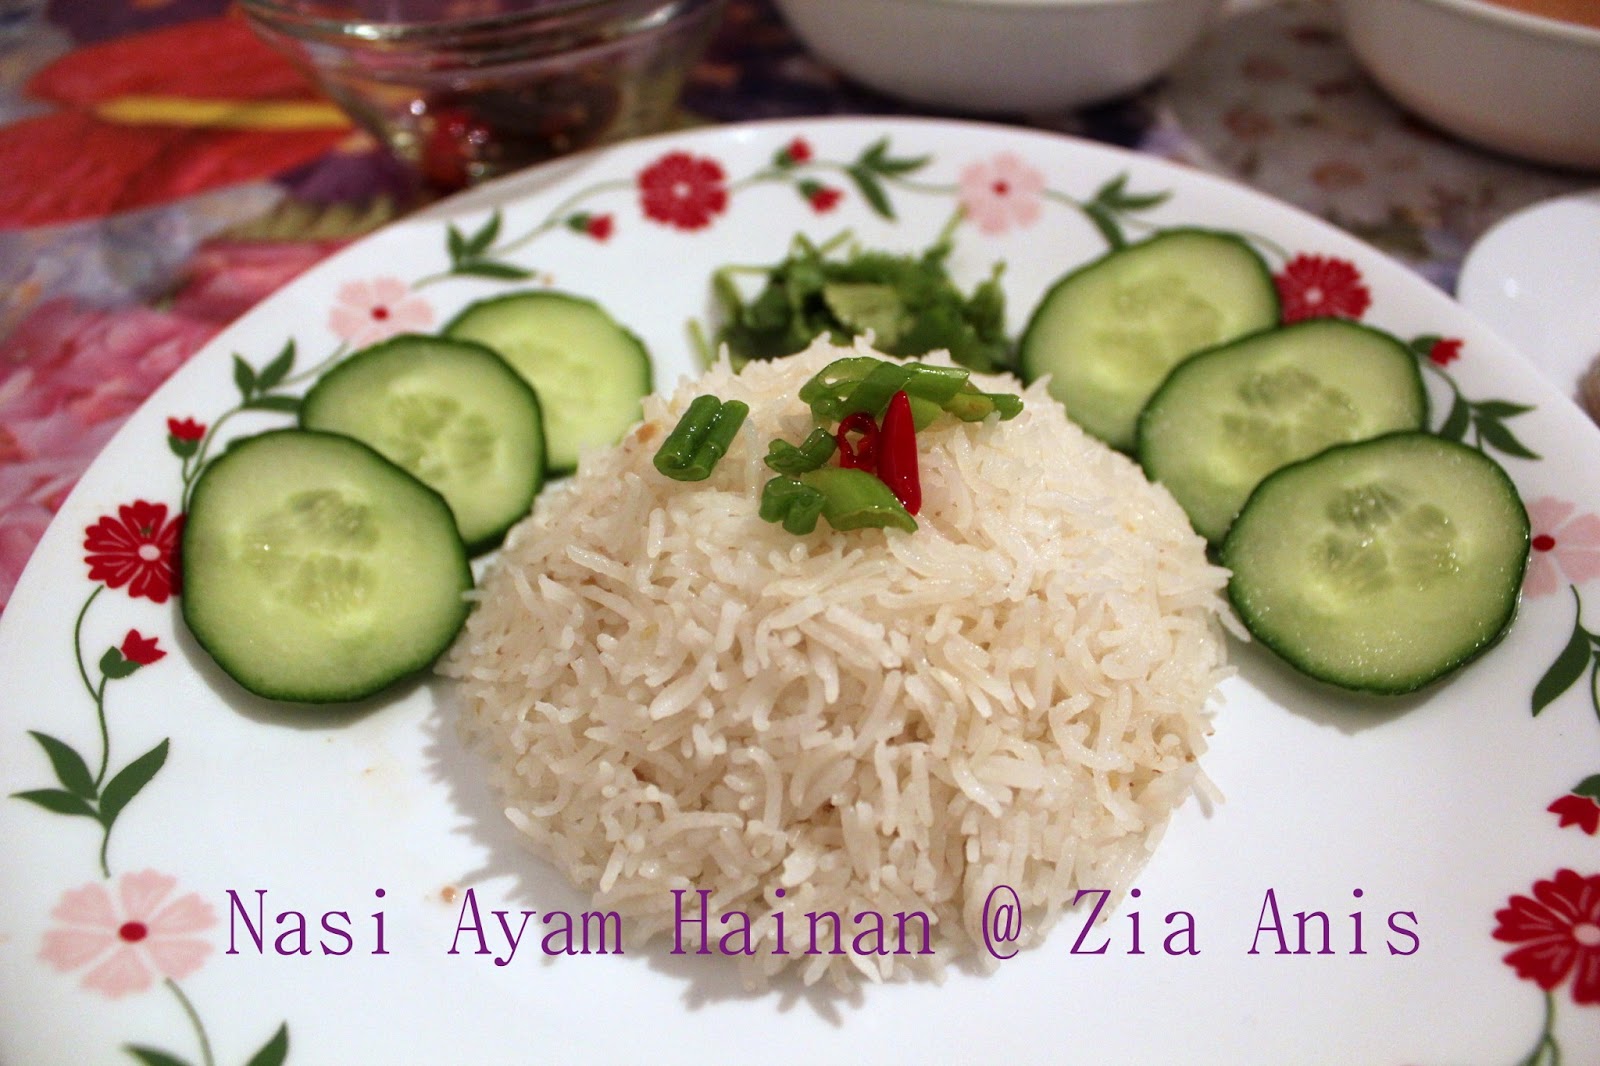 Zia Anis: Menu Phd: Nasi Ayam Hainan